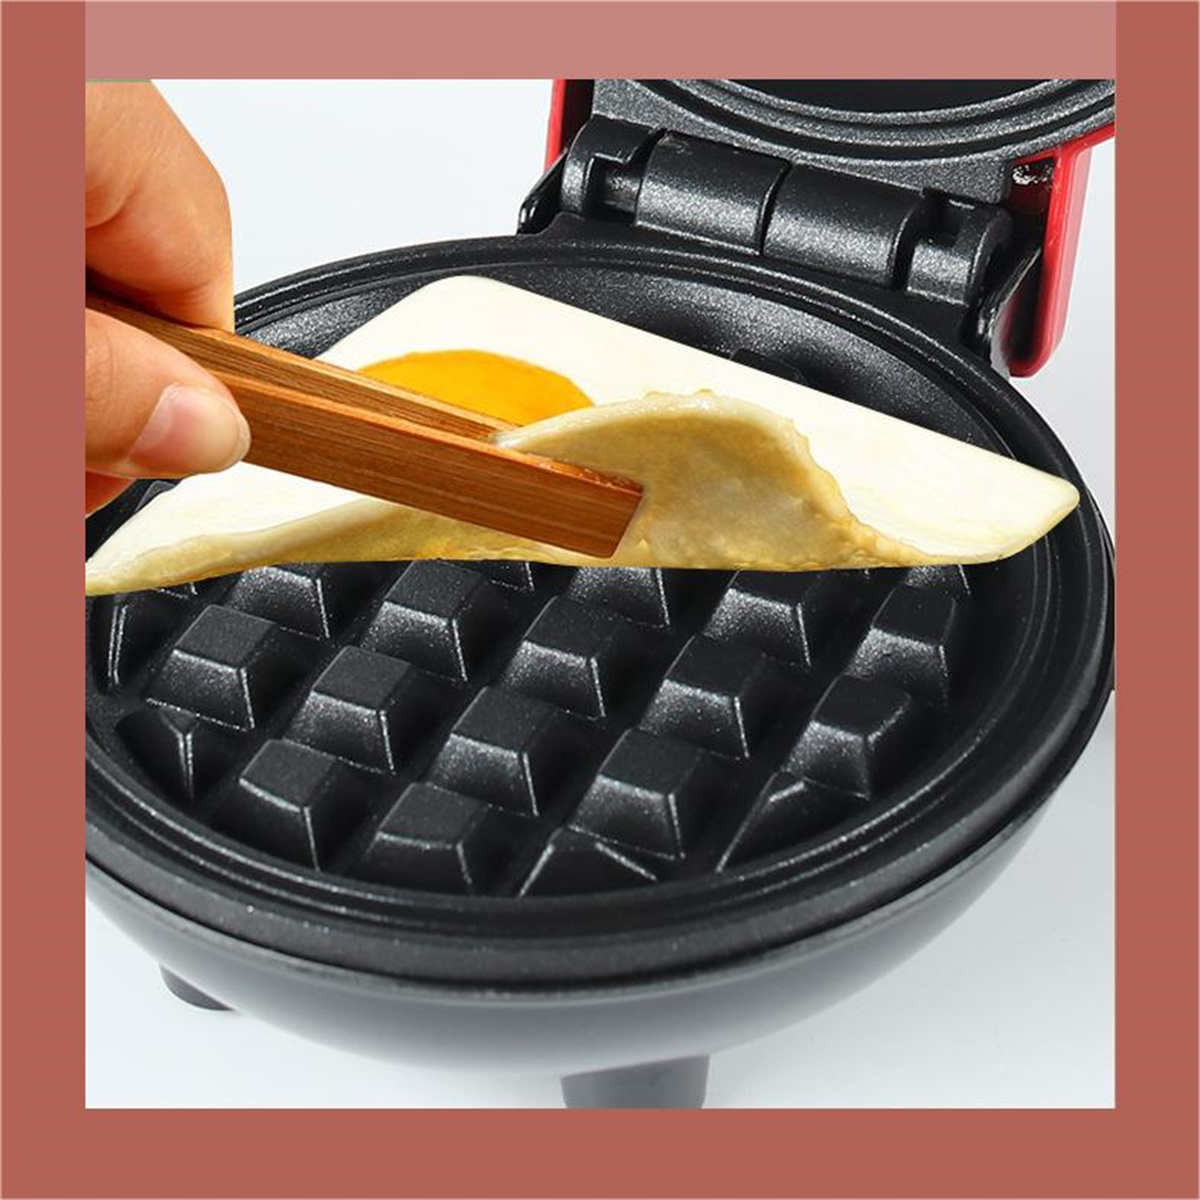 für Waffelmaschine Zuhause Multifunktional SYNTEK Keksdose Mini Rot Waffeleisen Frühstücksmaschine Waffeleisen Elektrisch